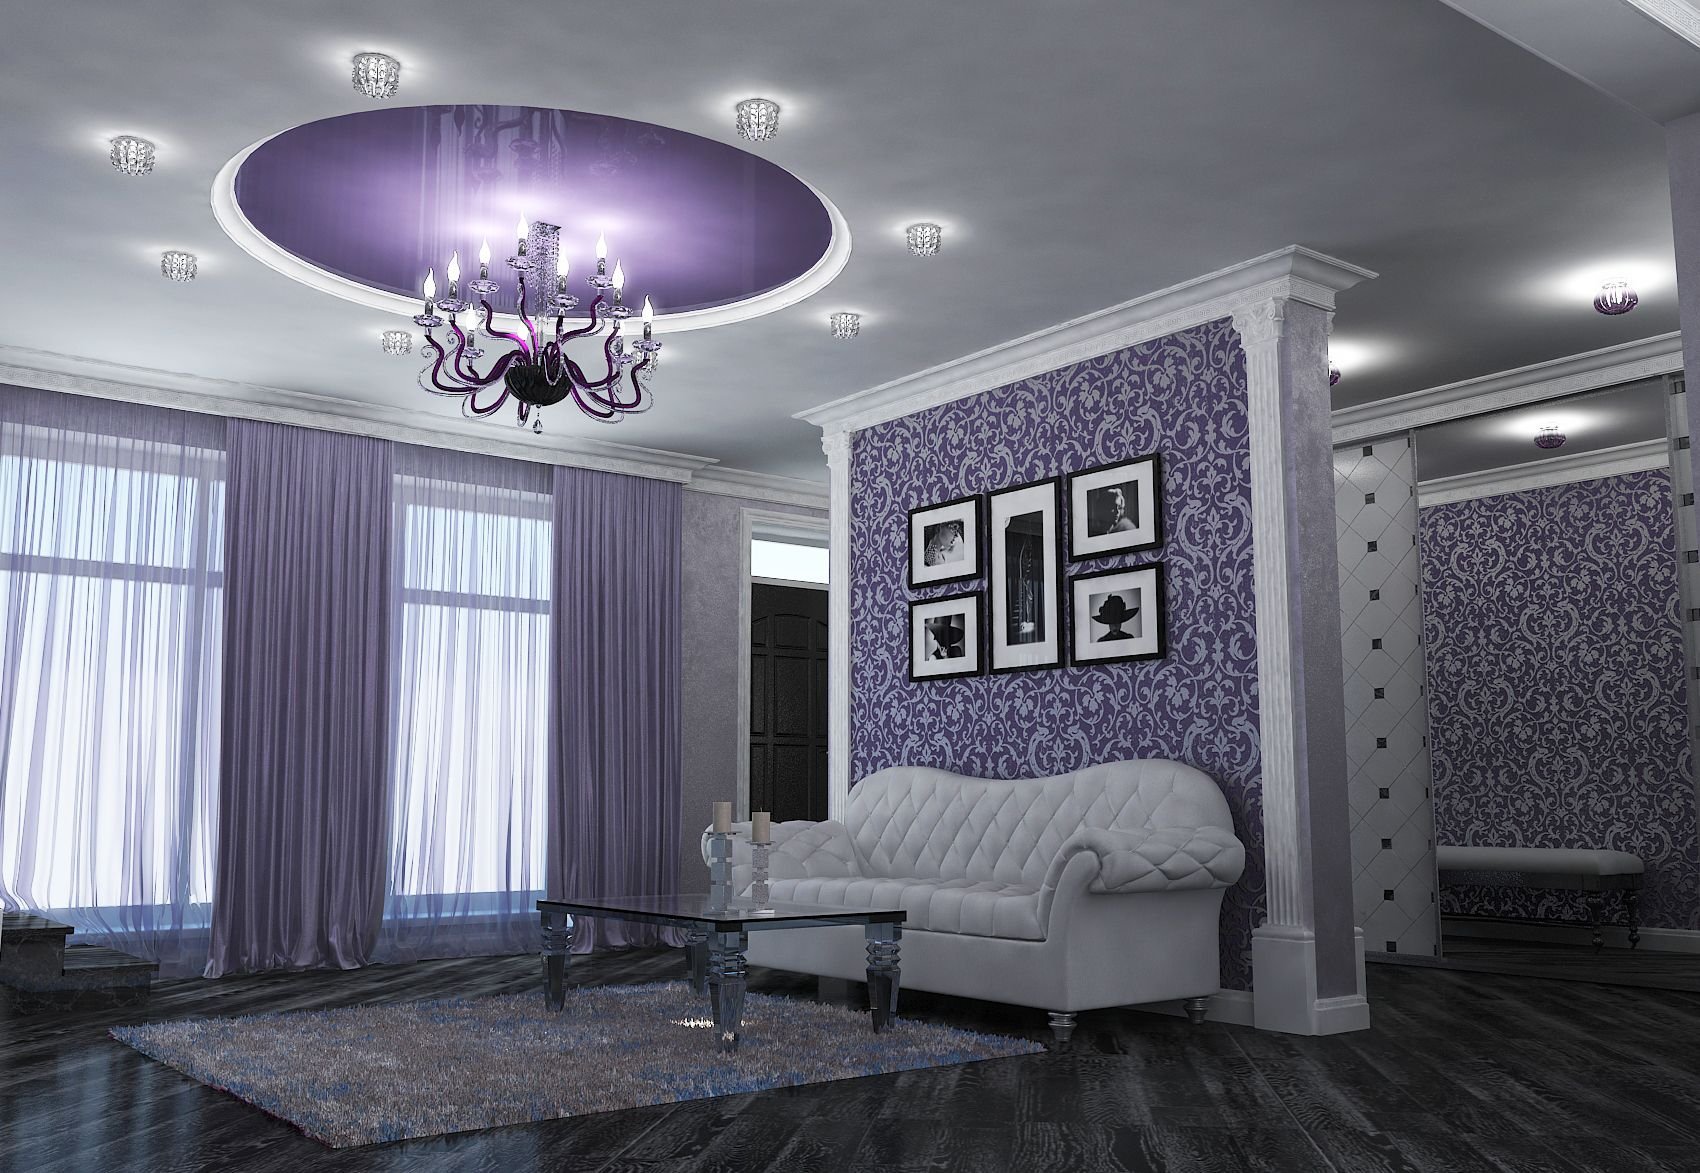 Сиреневый цвет в интерьере гостиной (50 фото) — портал о строительстве, ремонте и дизайне